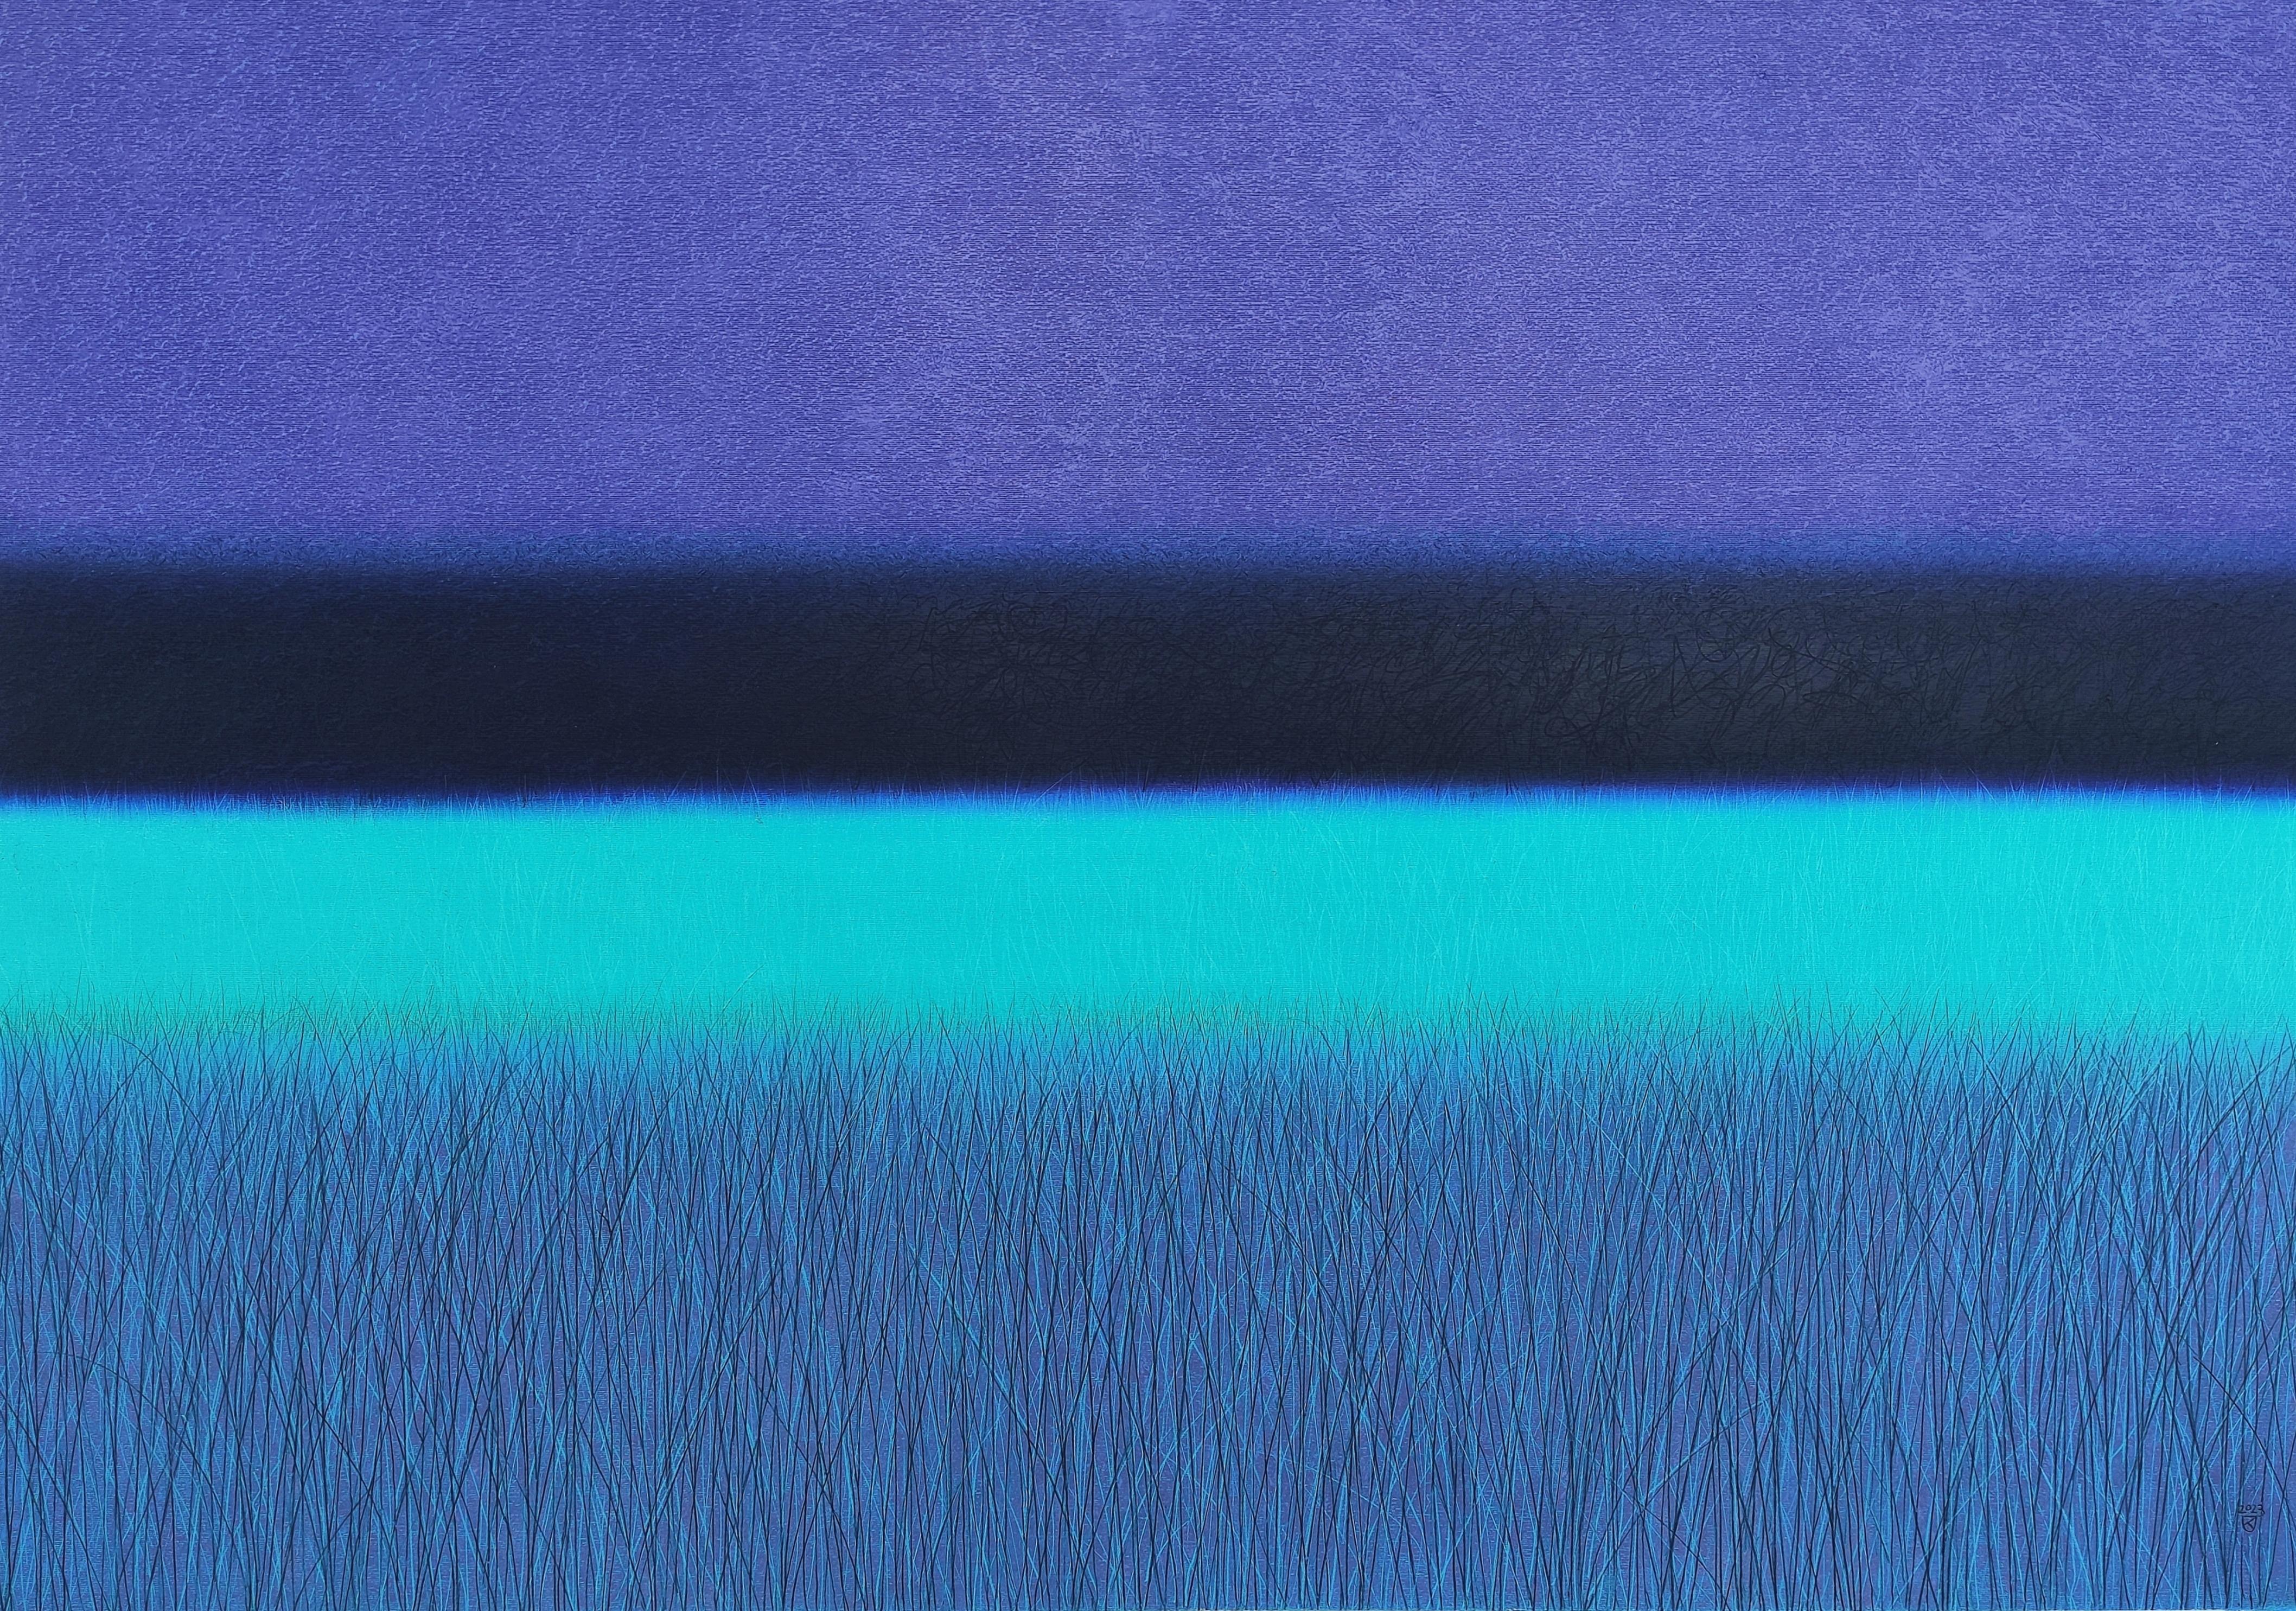 Turquoise Savannah  - Contemporary Landscape Oil Pastel Painting, Vibrant Colors